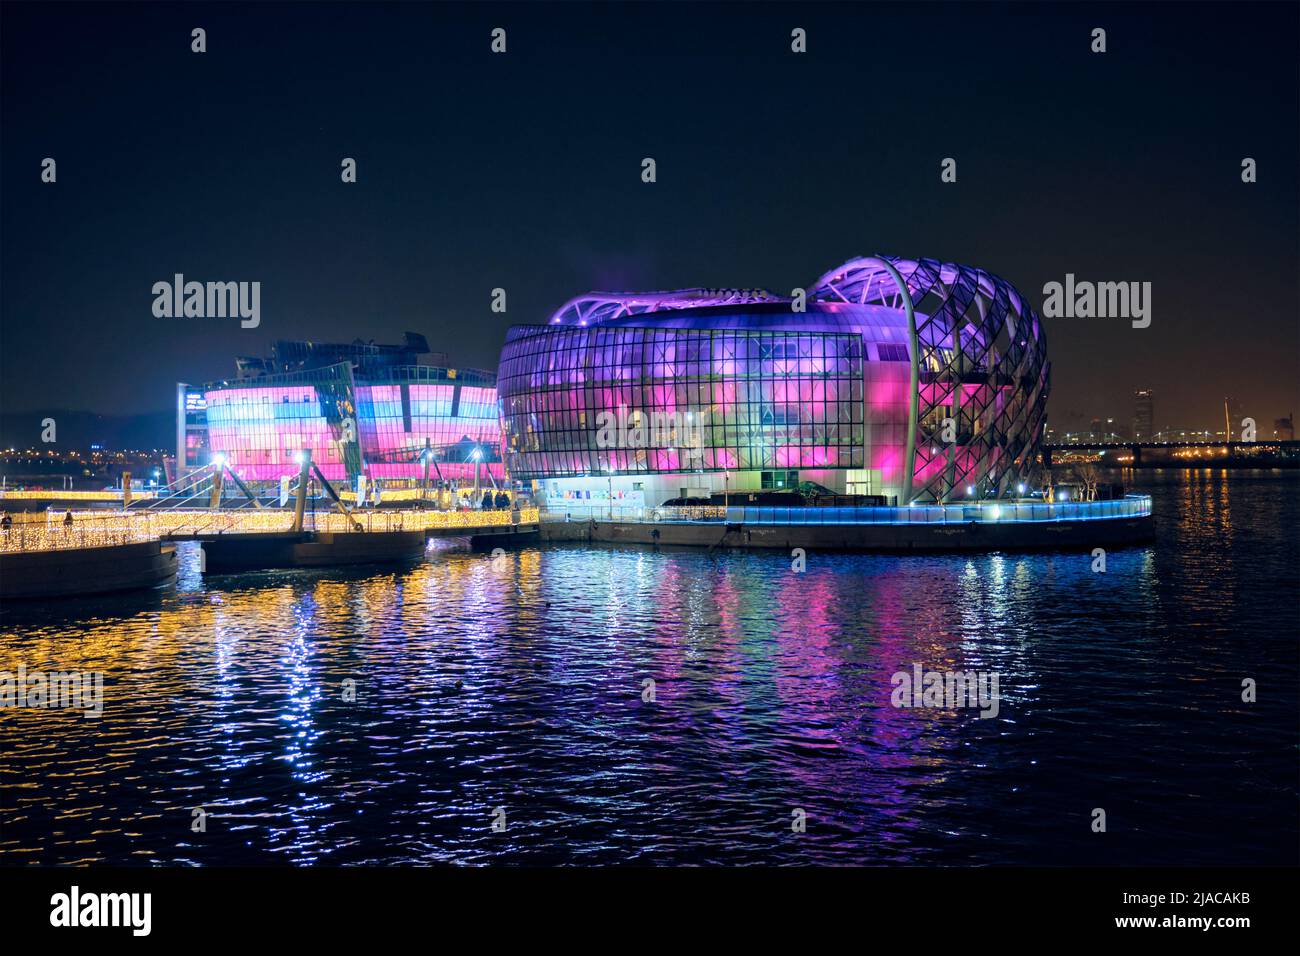 Algunos edificios sevicios en islas flotantes artificiales situadas cerca del puente de Banpo iluminados por la noche, Seúl, Corea del Sur Foto de stock